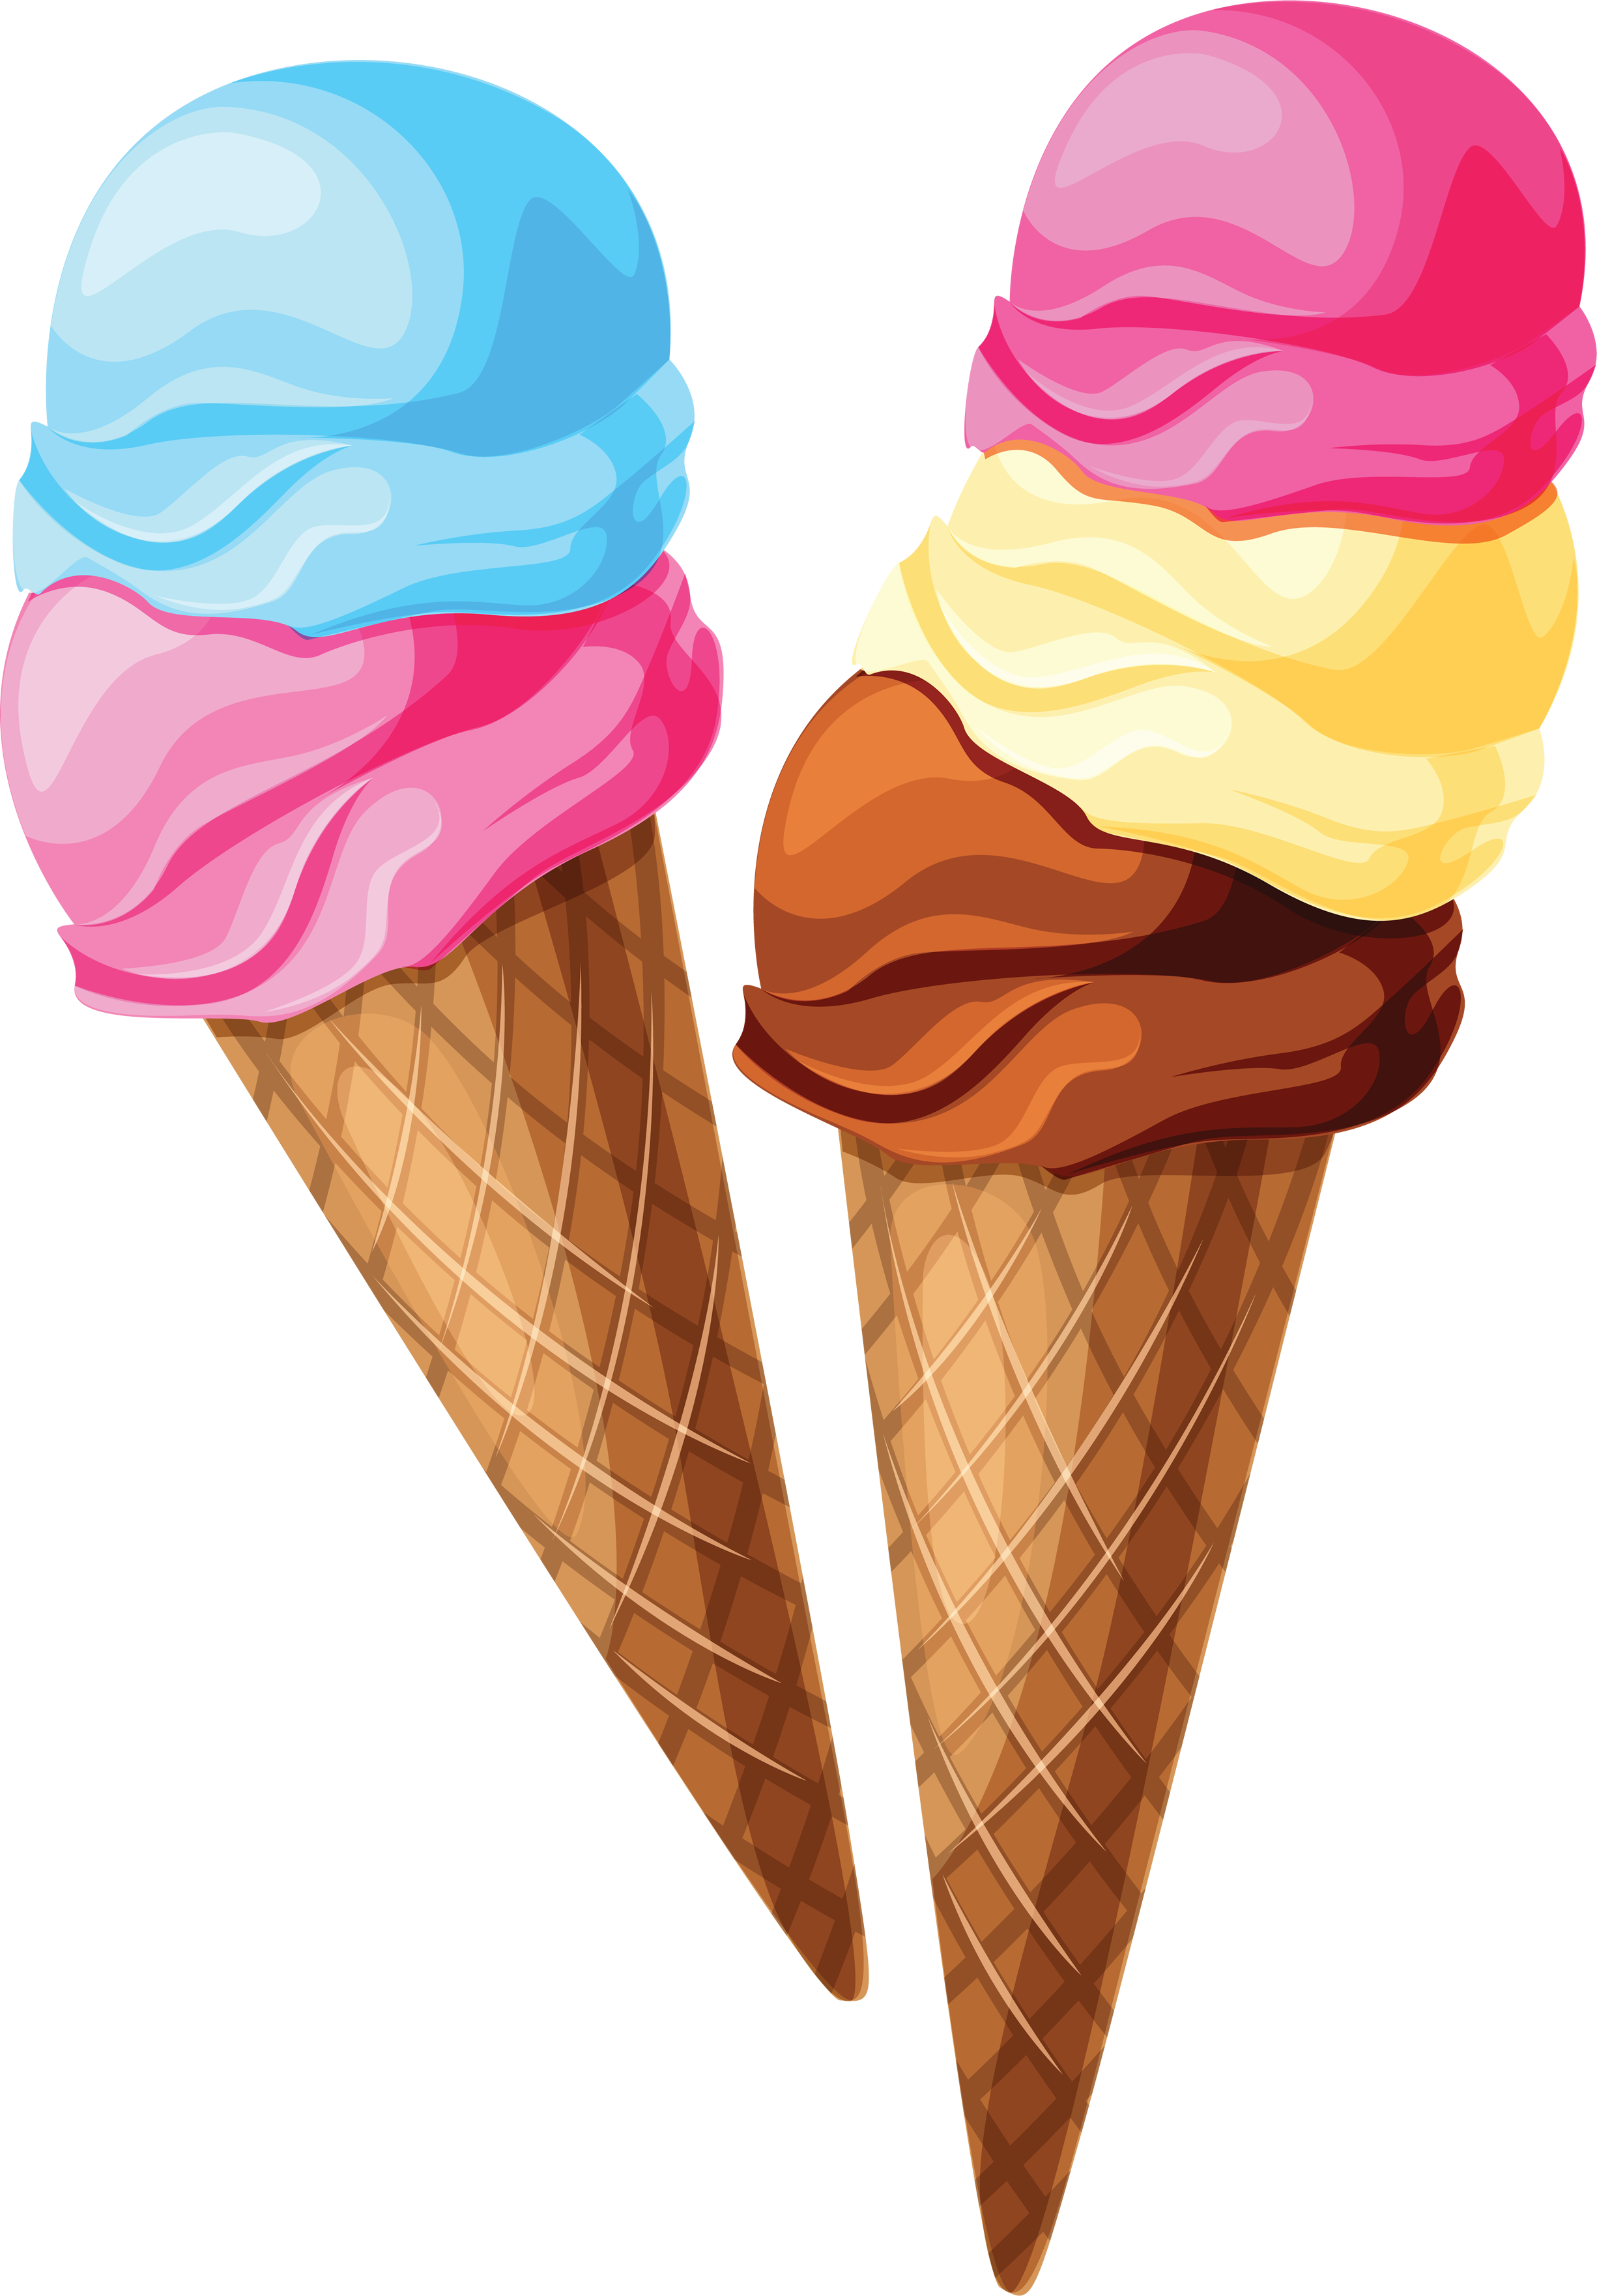 clip art ice cream cone free - photo #45